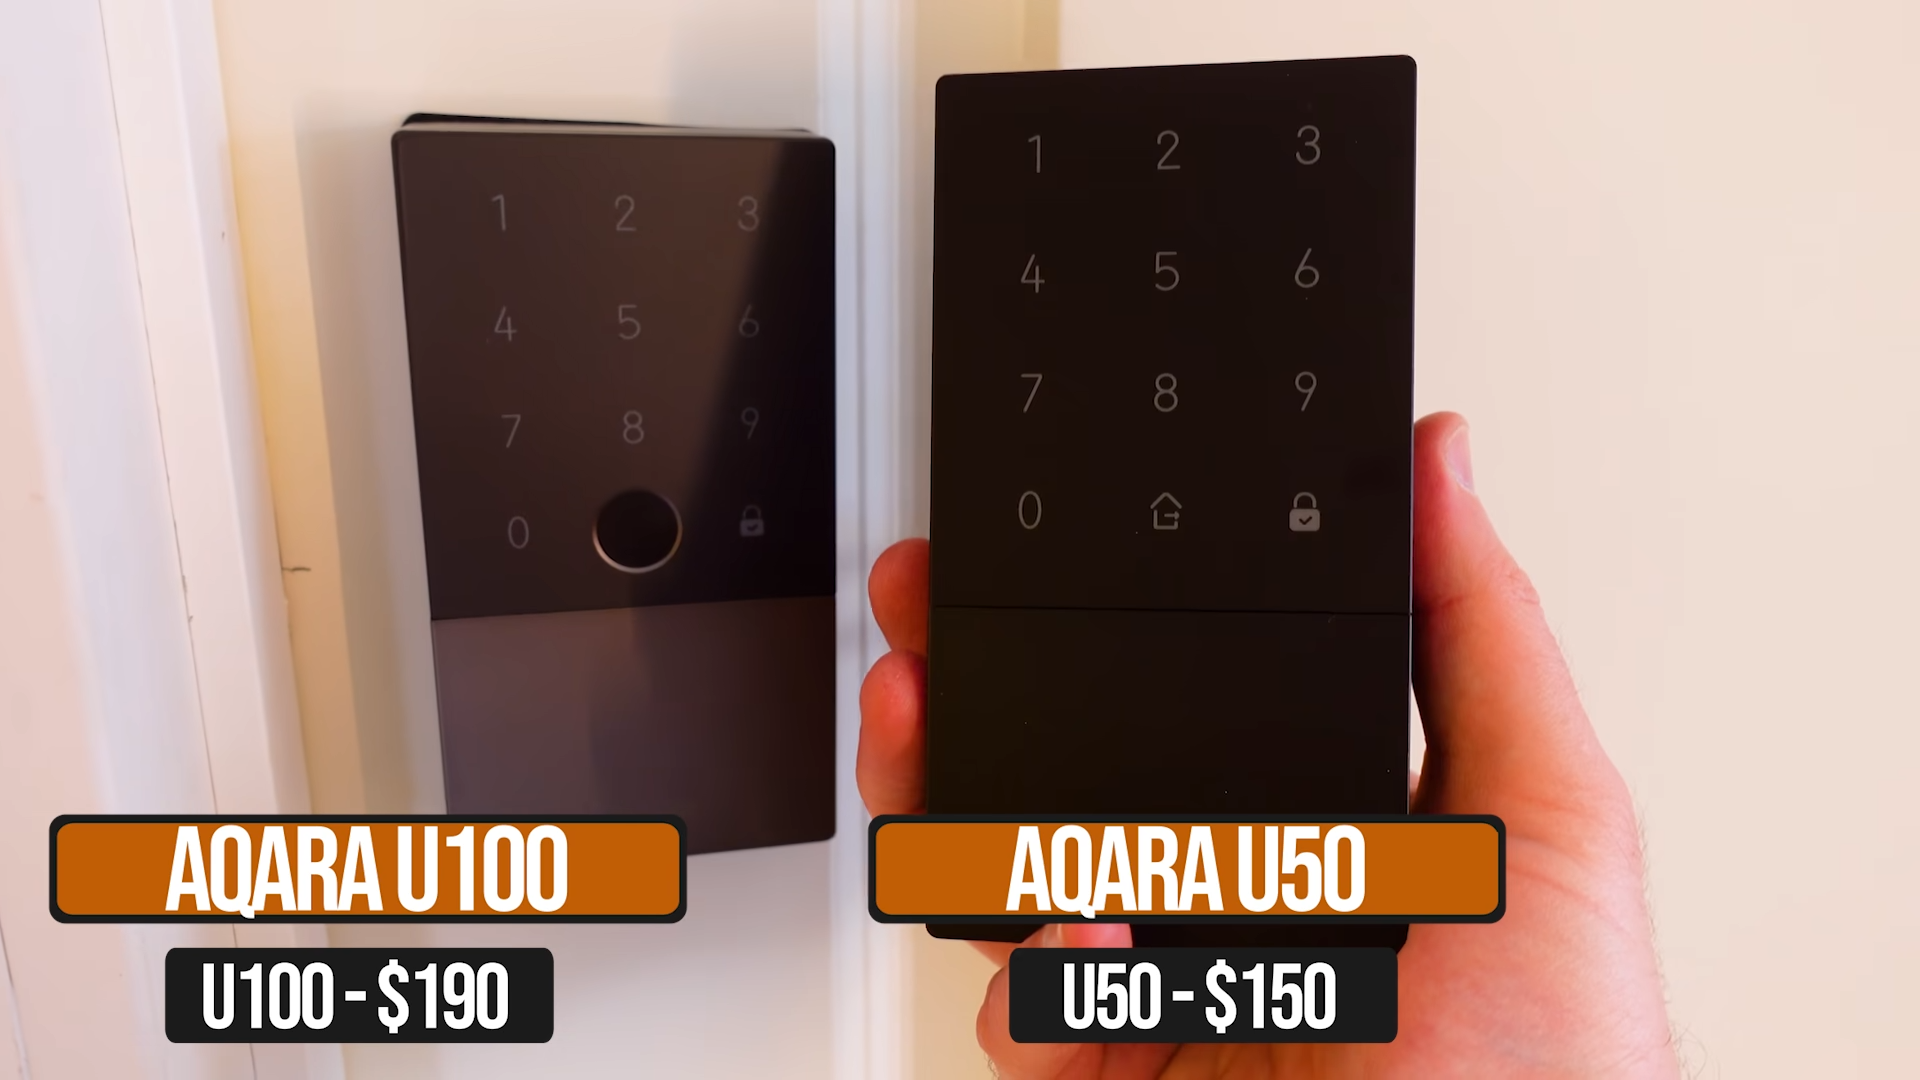 Price comparison of U50 and U100